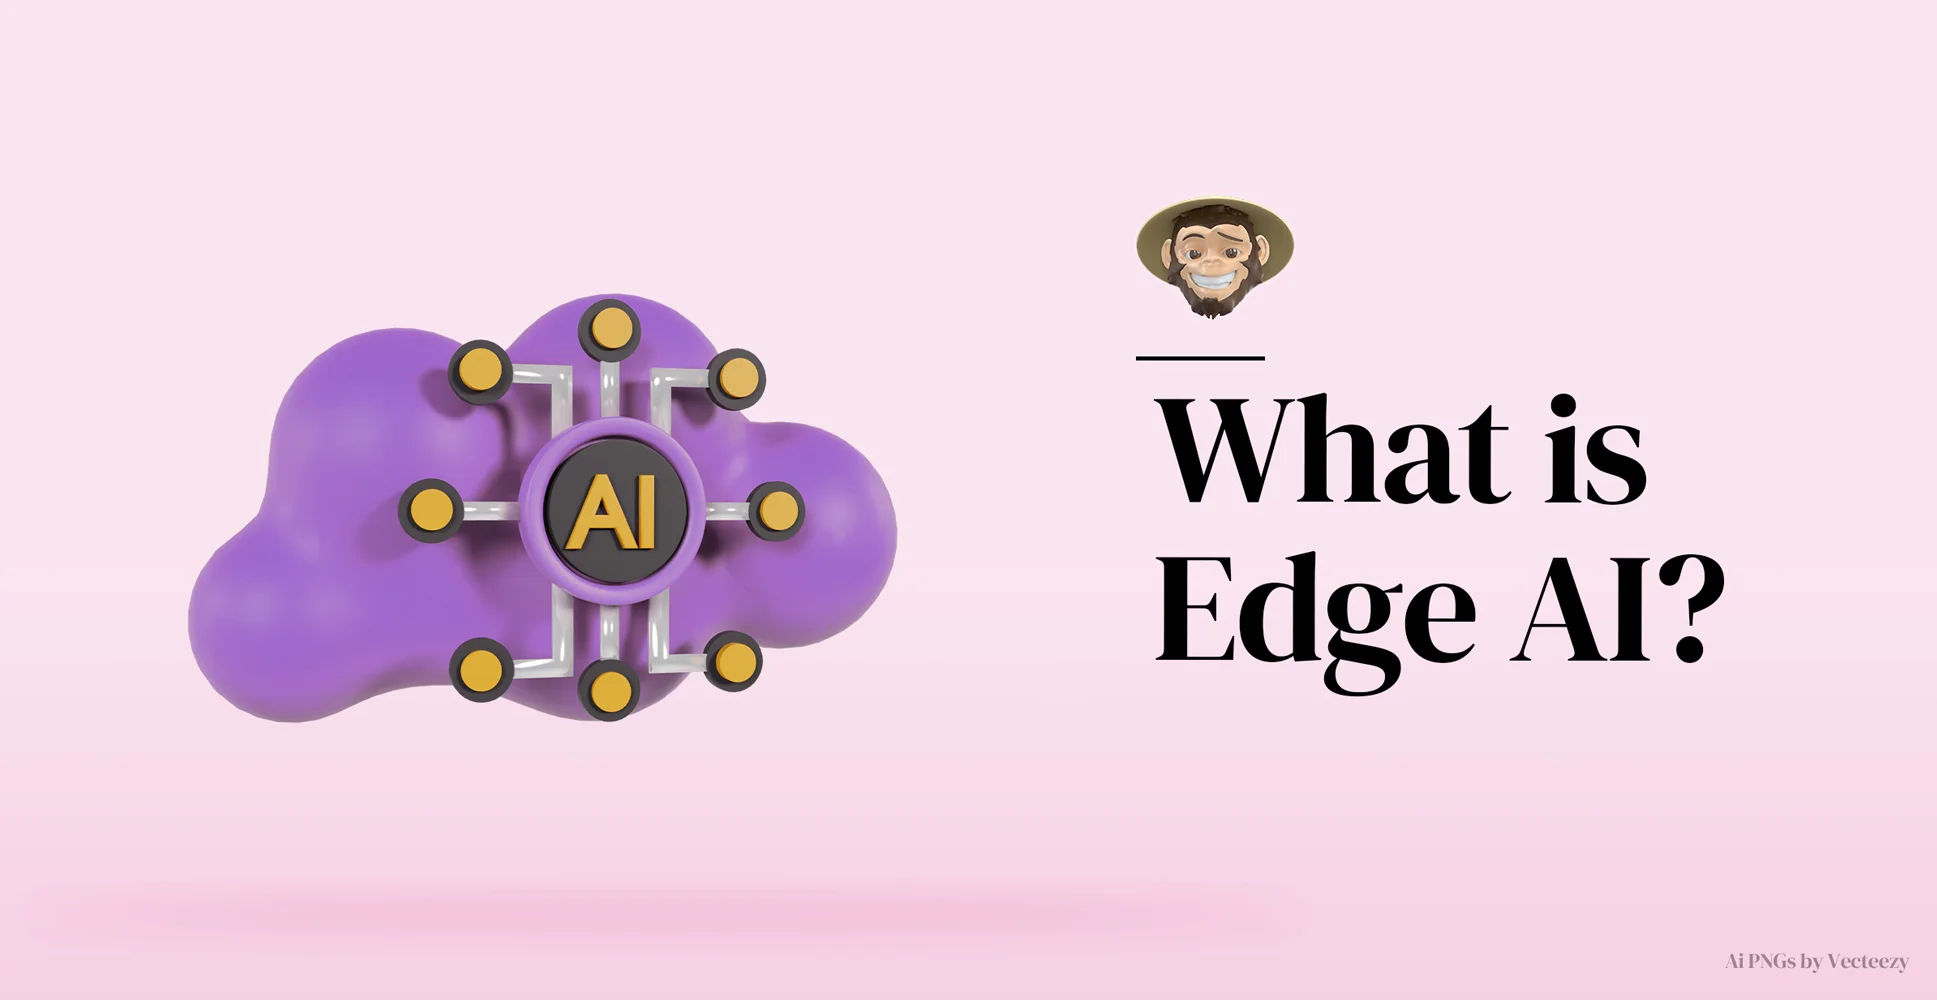 What is edge AI?